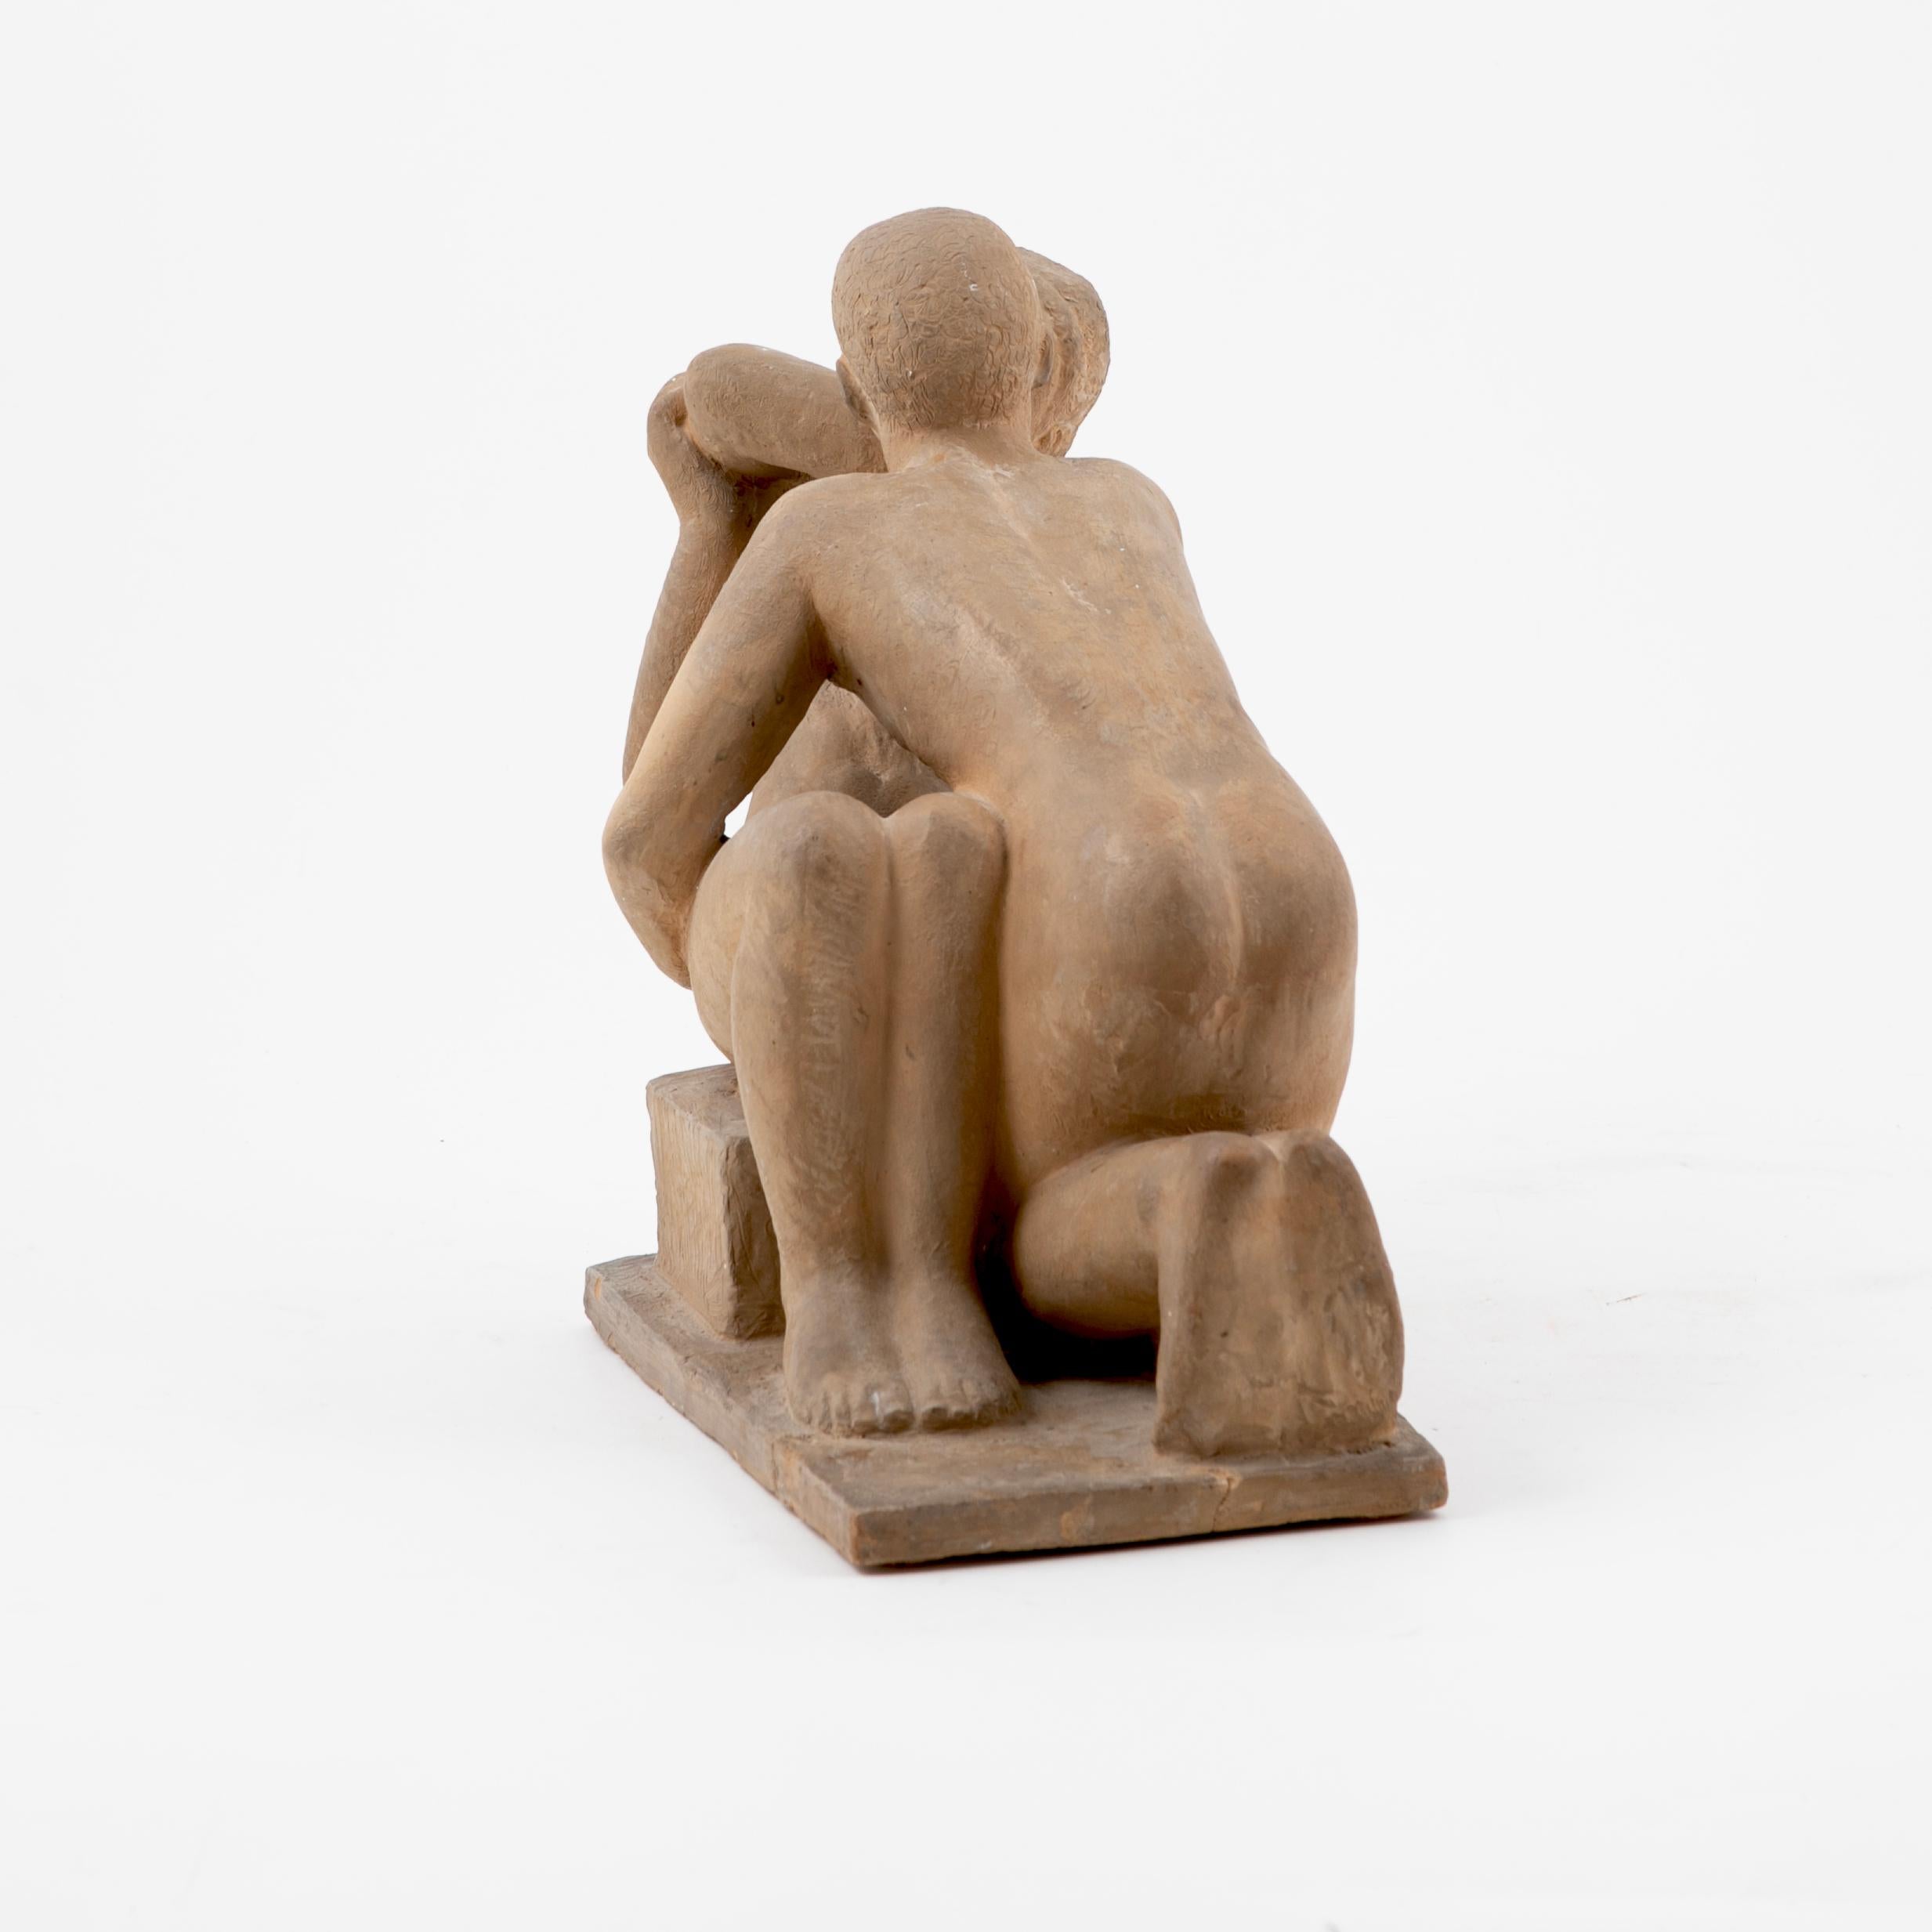 Eine Skulptur aus gebranntem Ton, die ein erotisches Paar darstellt.
Titel: Nr. 1.
Gezeichnet Gerhard Henning, 1927

NB: Der Sockel wurde repariert, die Skulptur selbst ist in neuwertigem Zustand.